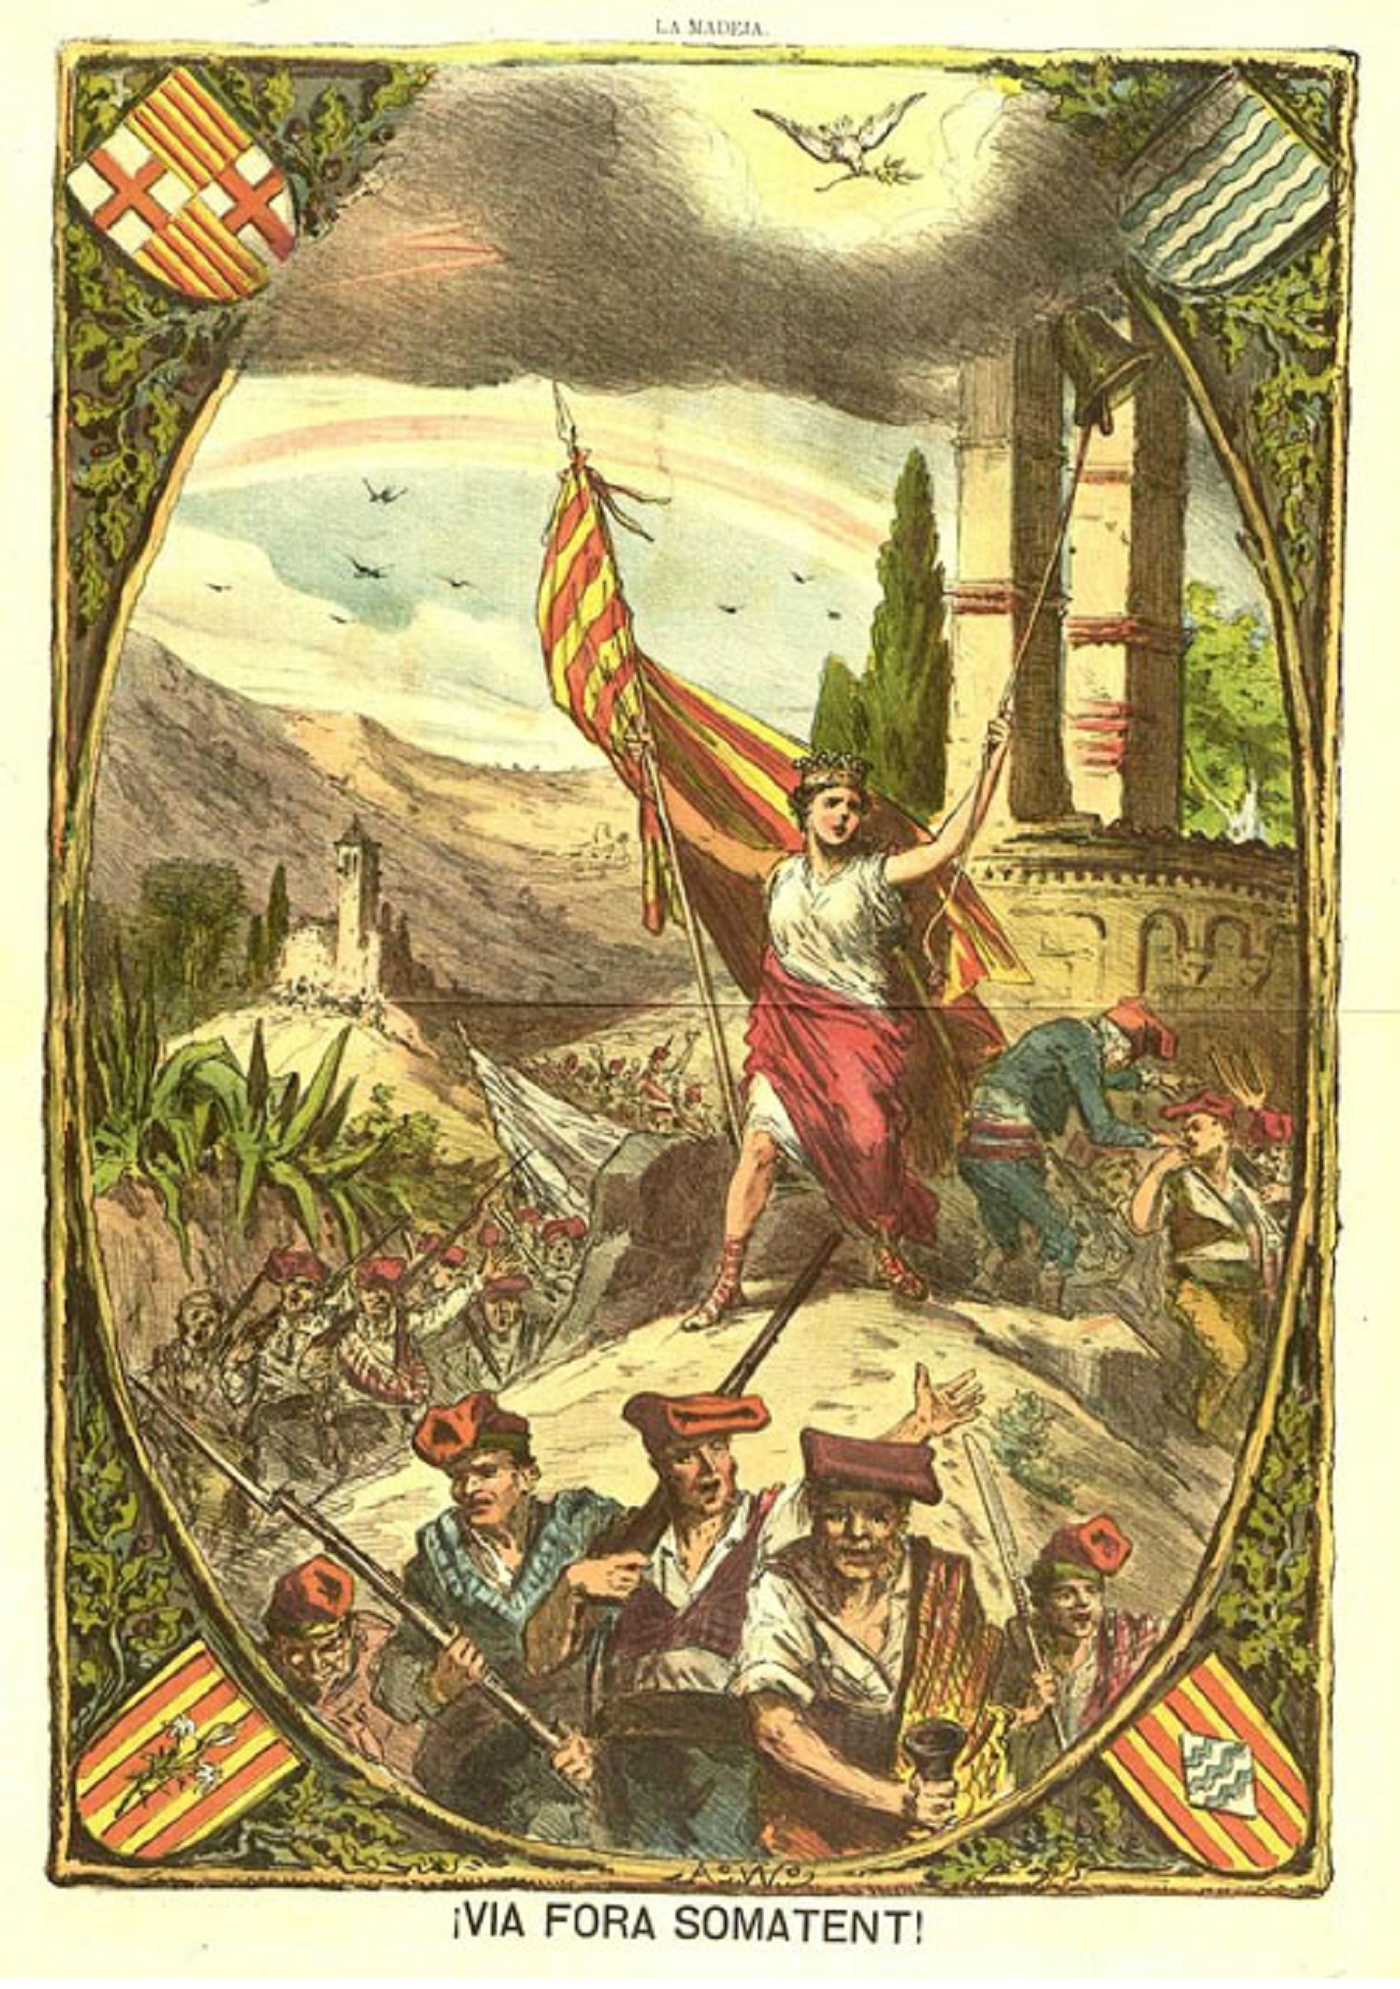 Representación de los Somatenes de Catalunya durante el siglo XIX. Fuente Piedras de Girona